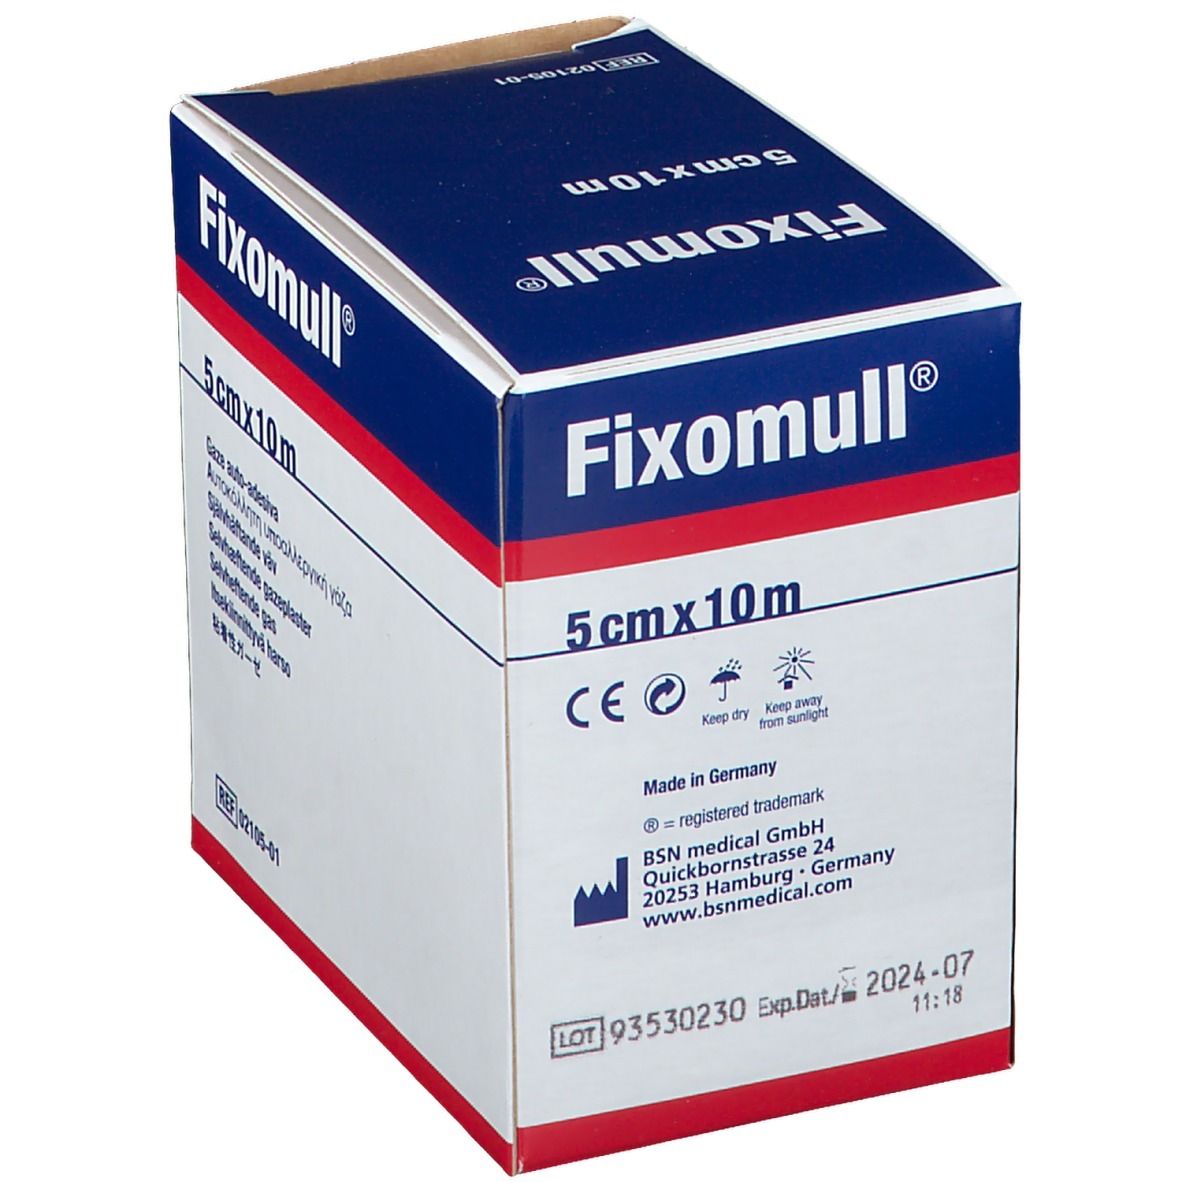 Fixomull® 5 cm x 10 m